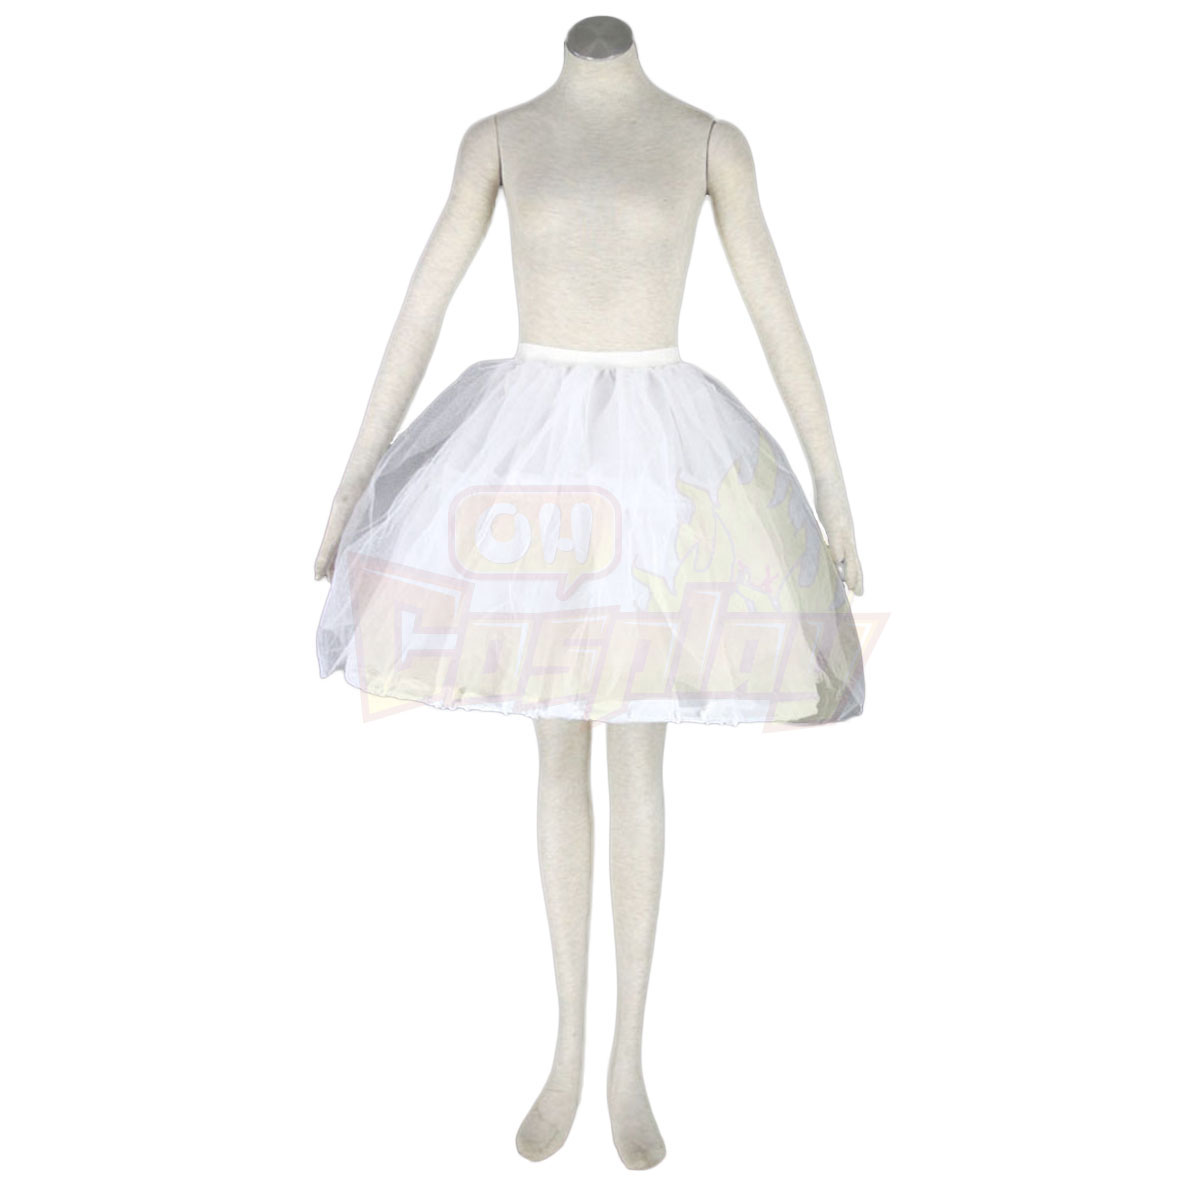 호화로운 로리타 문화 터커 체인 소동 긴 드레스 코스프레 의상